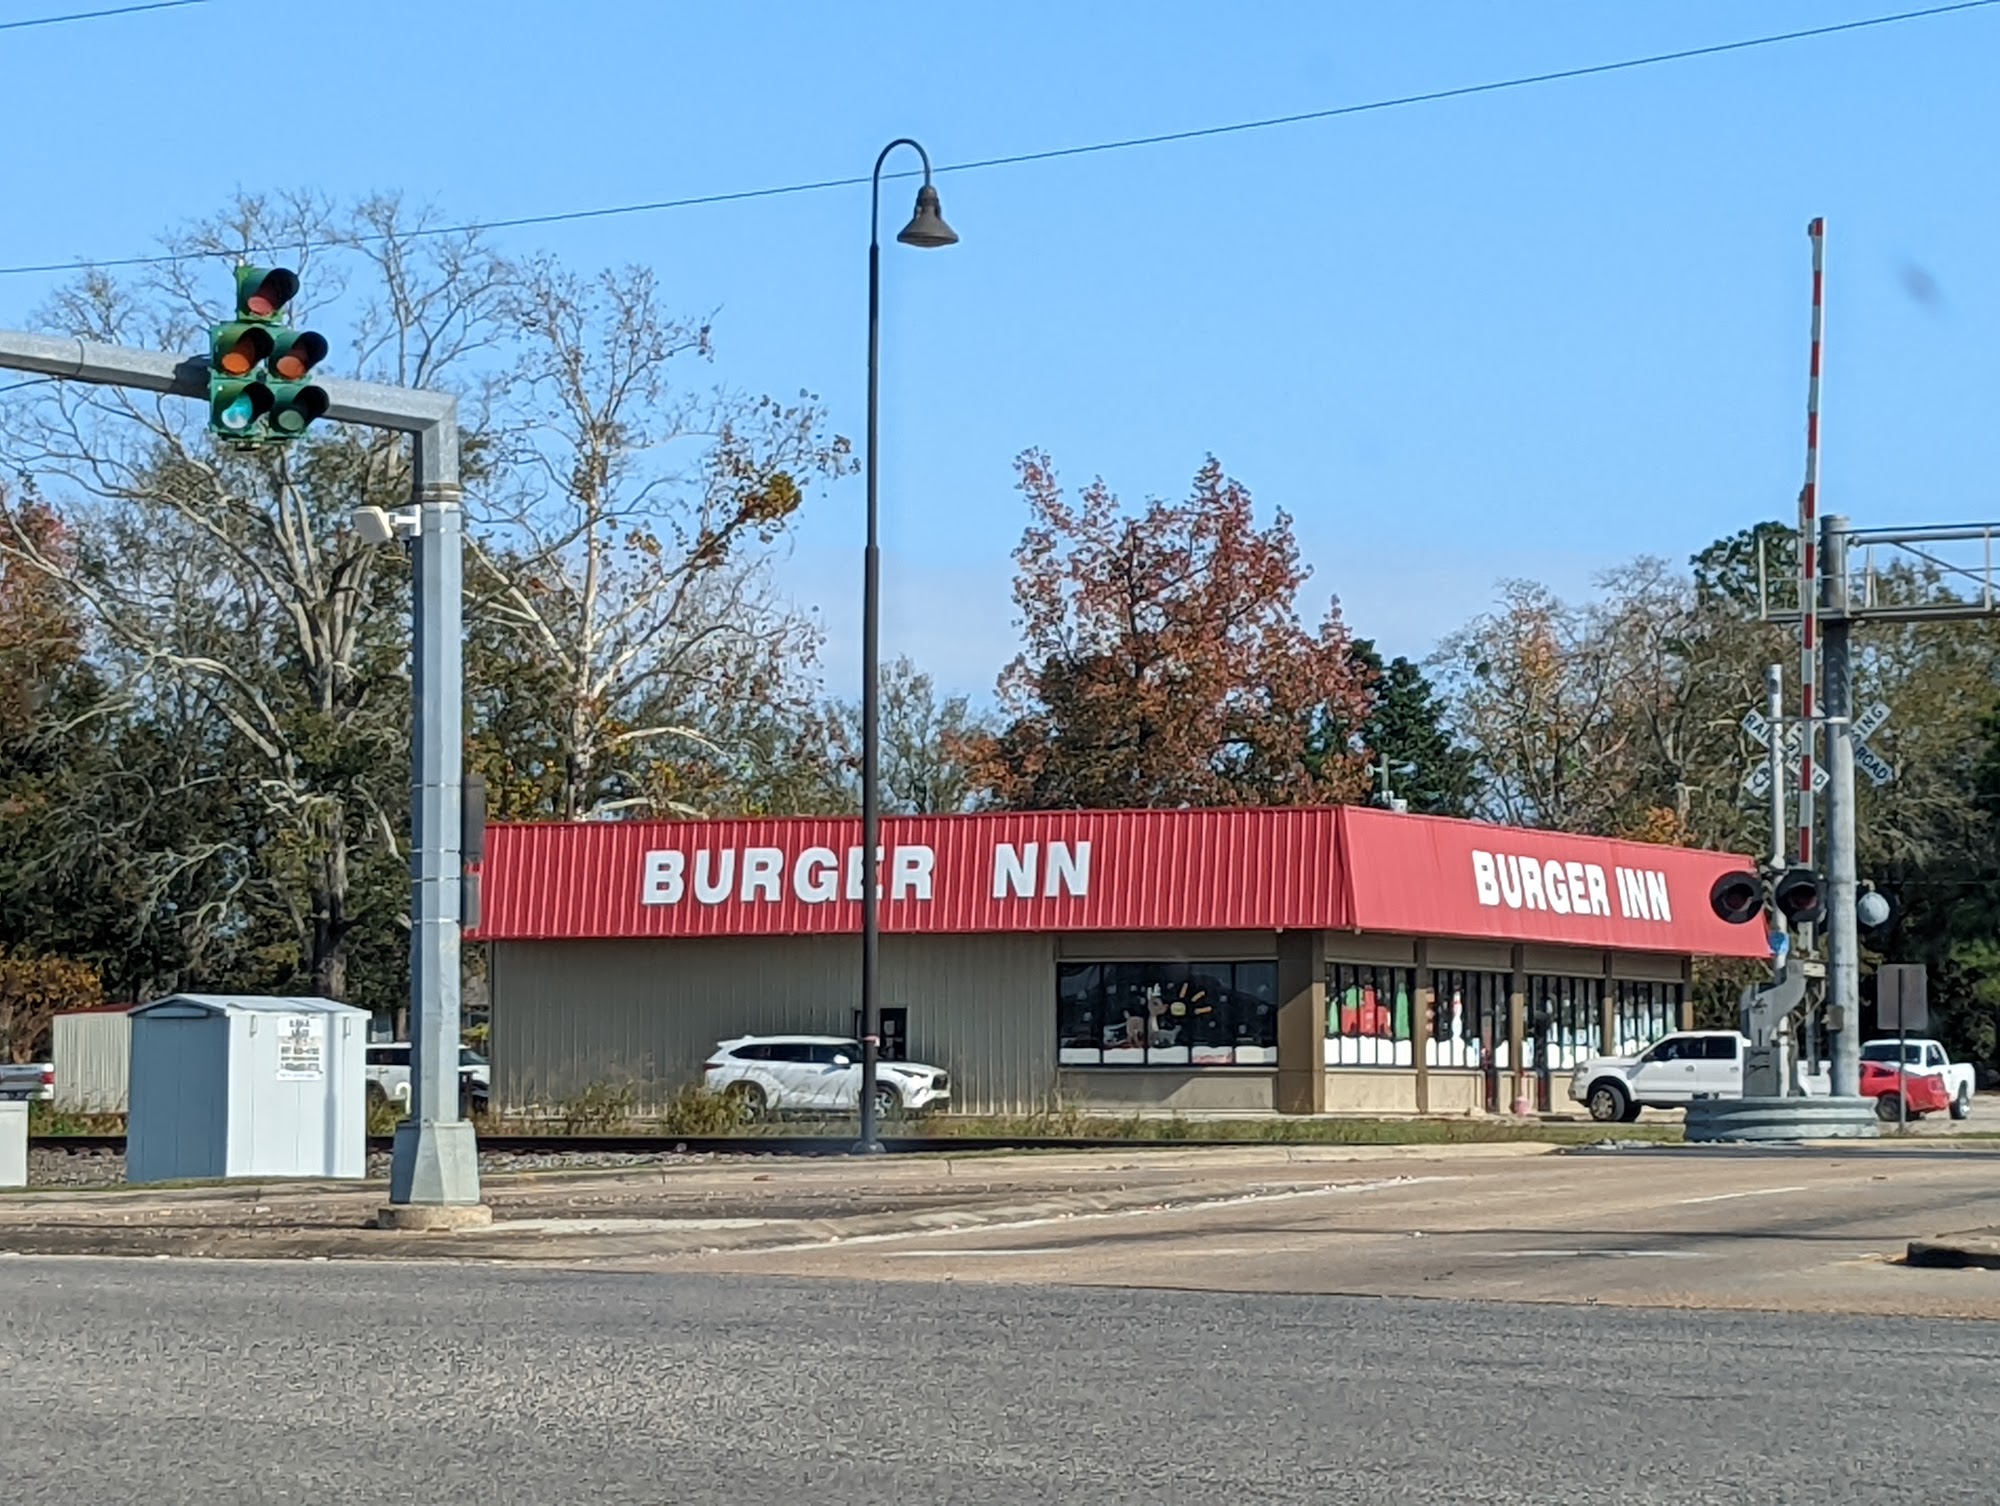 Burger Inn